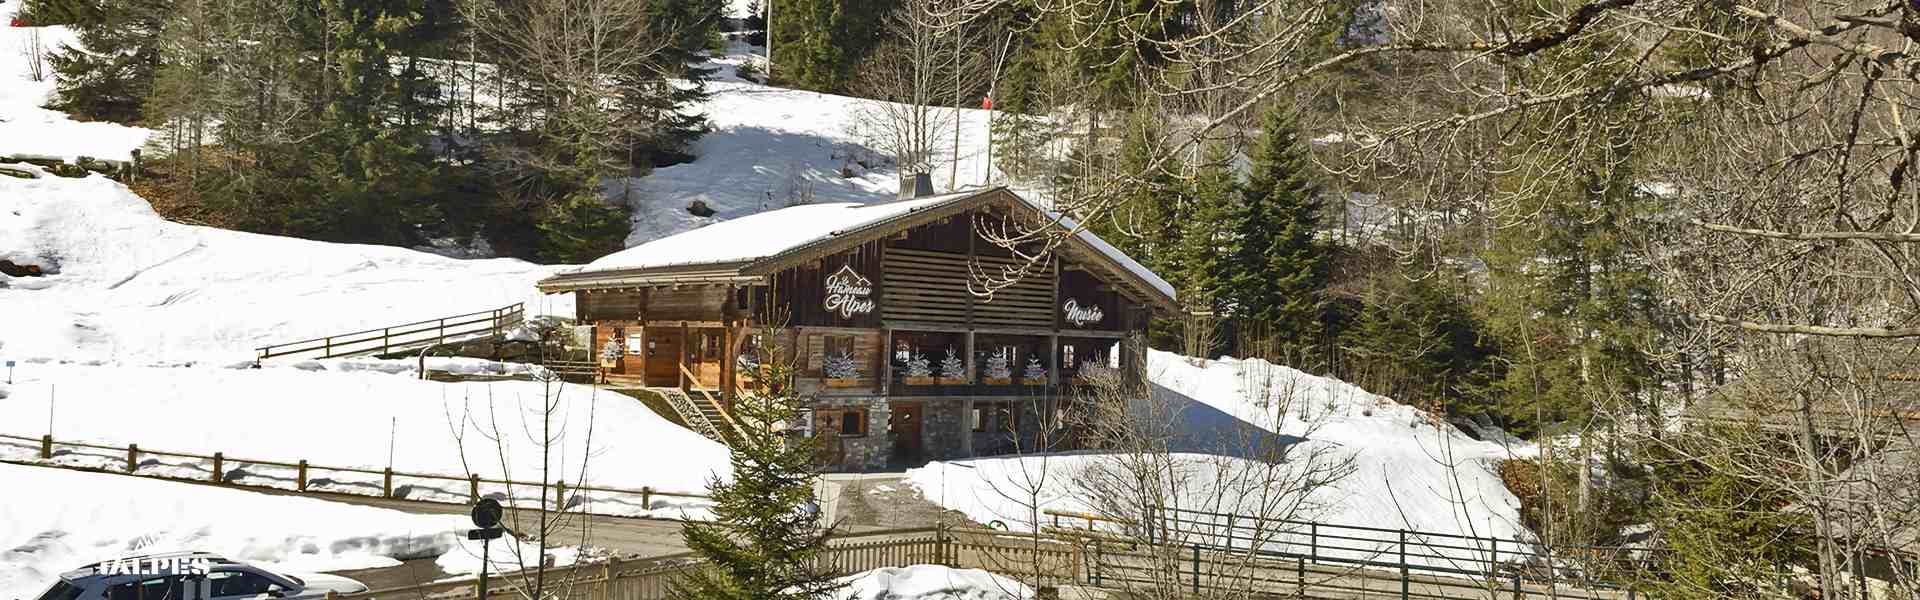 Ferme du Hameau des Alpes, La Clusaz, Haute-Savoie